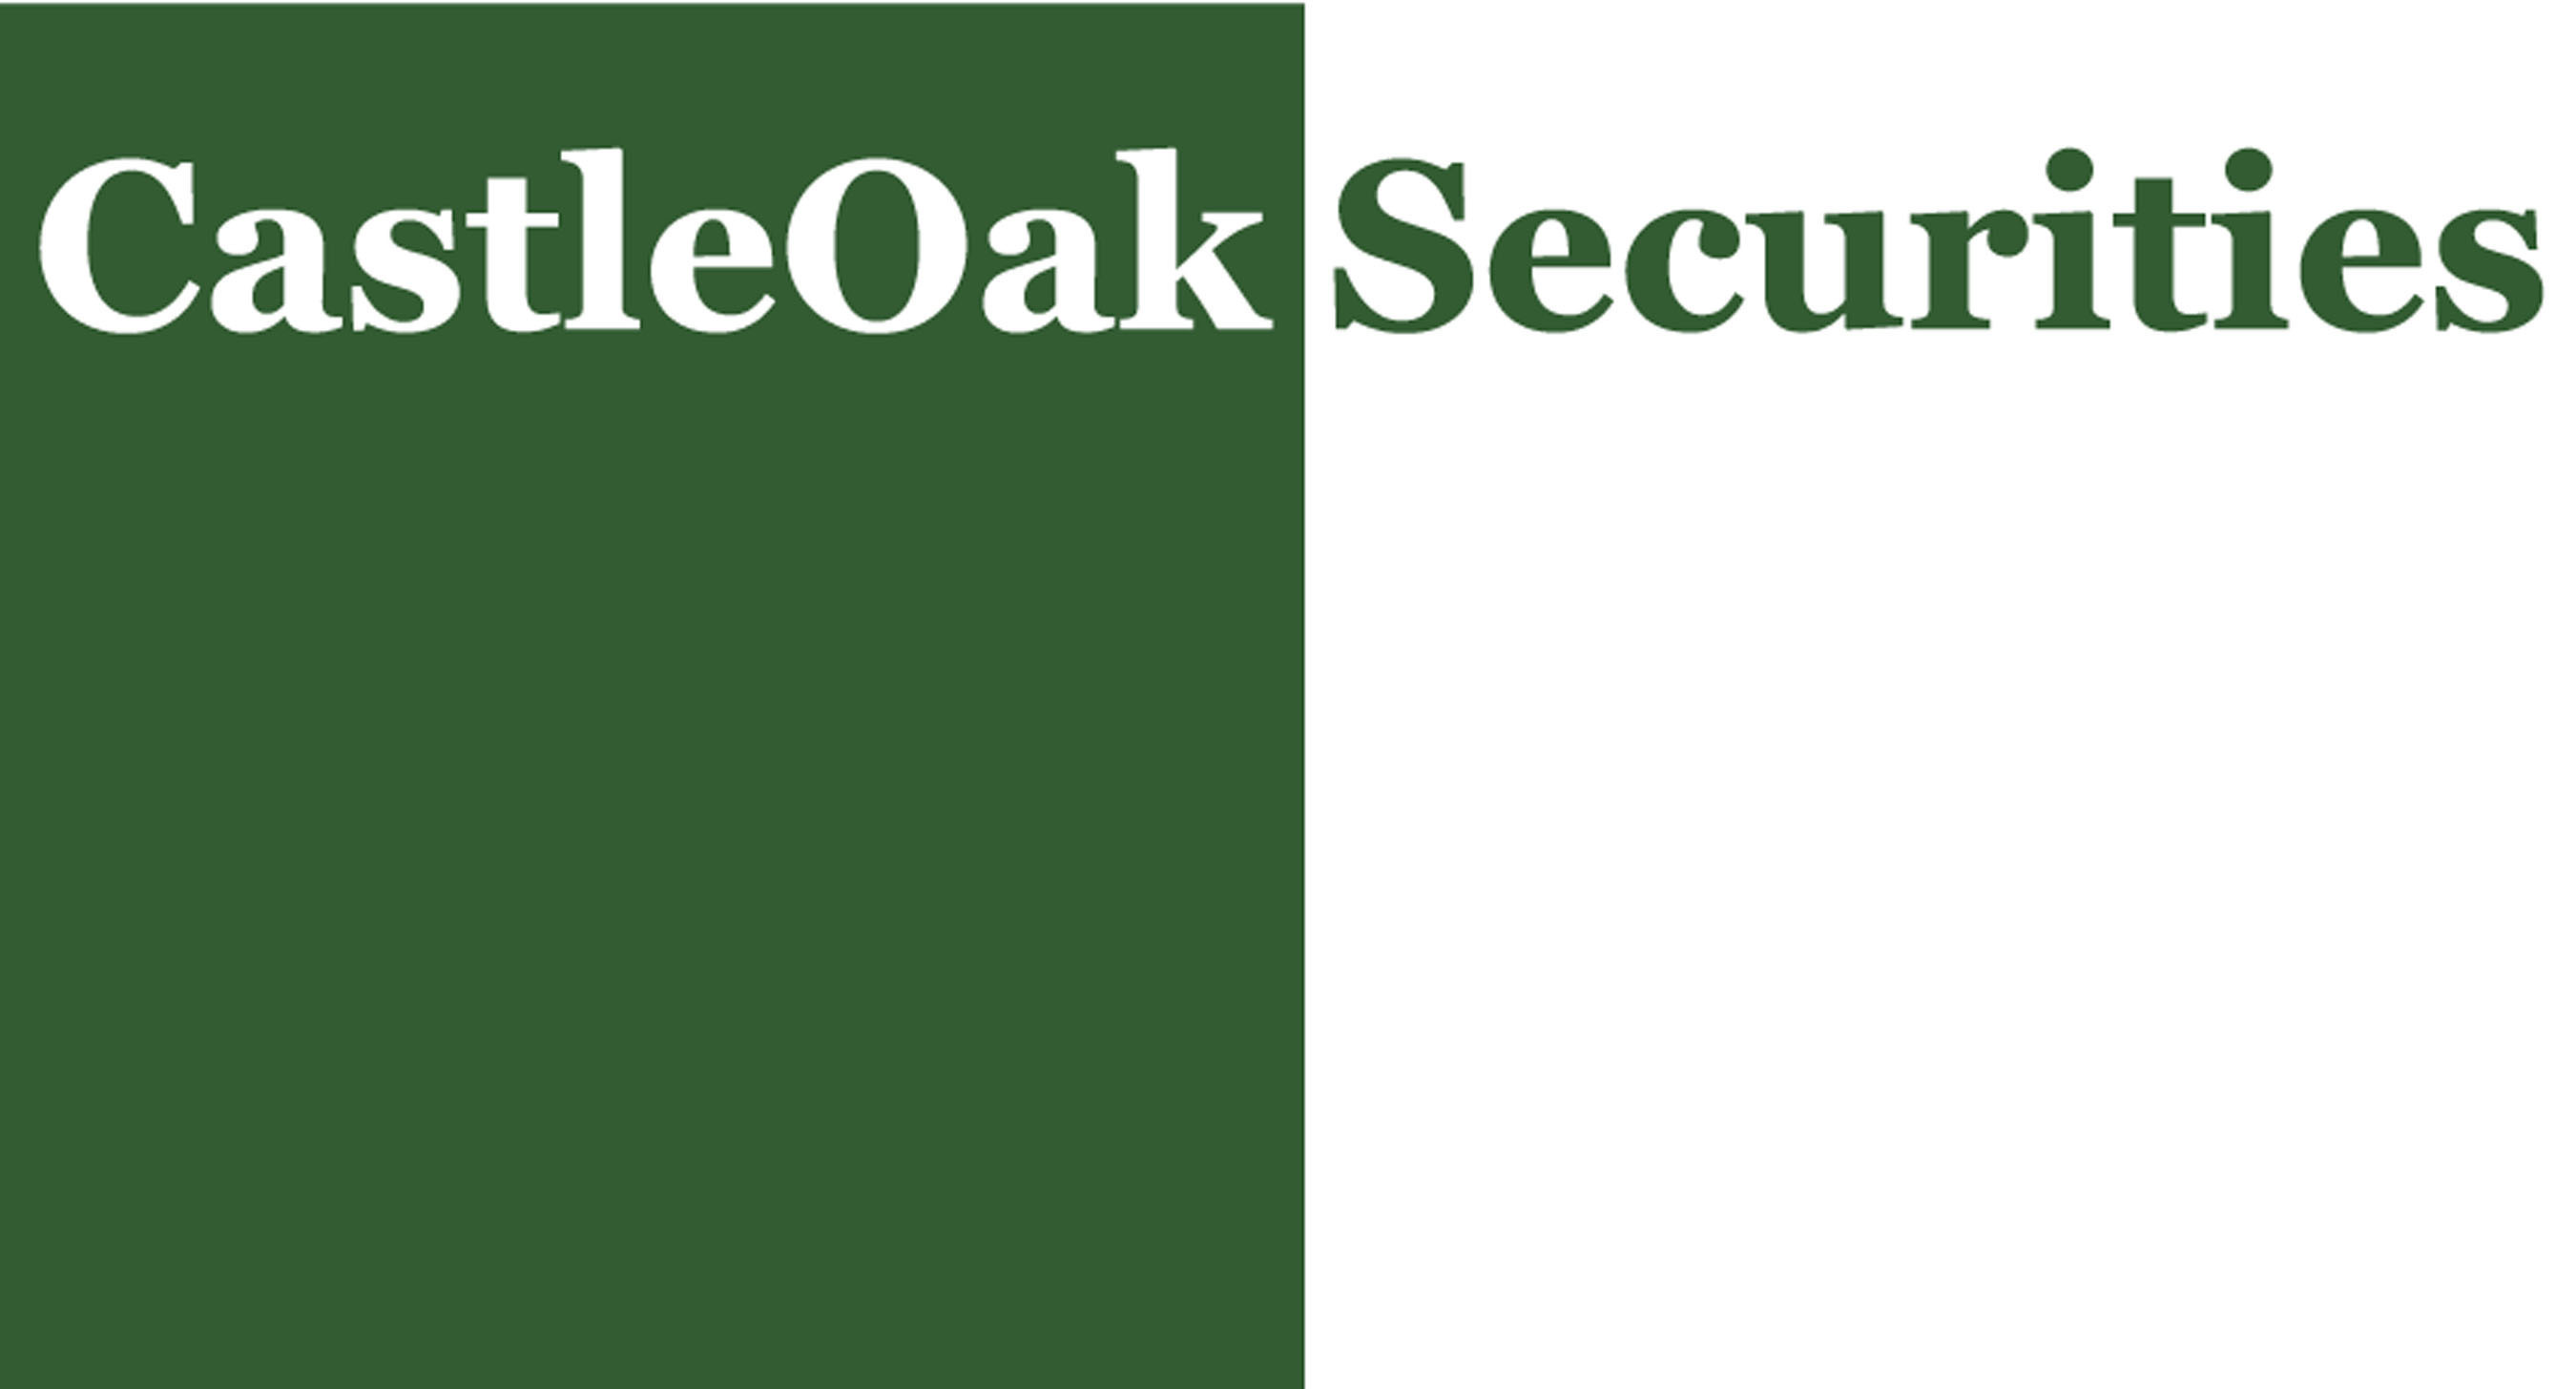 CastleOak Securities Logo.